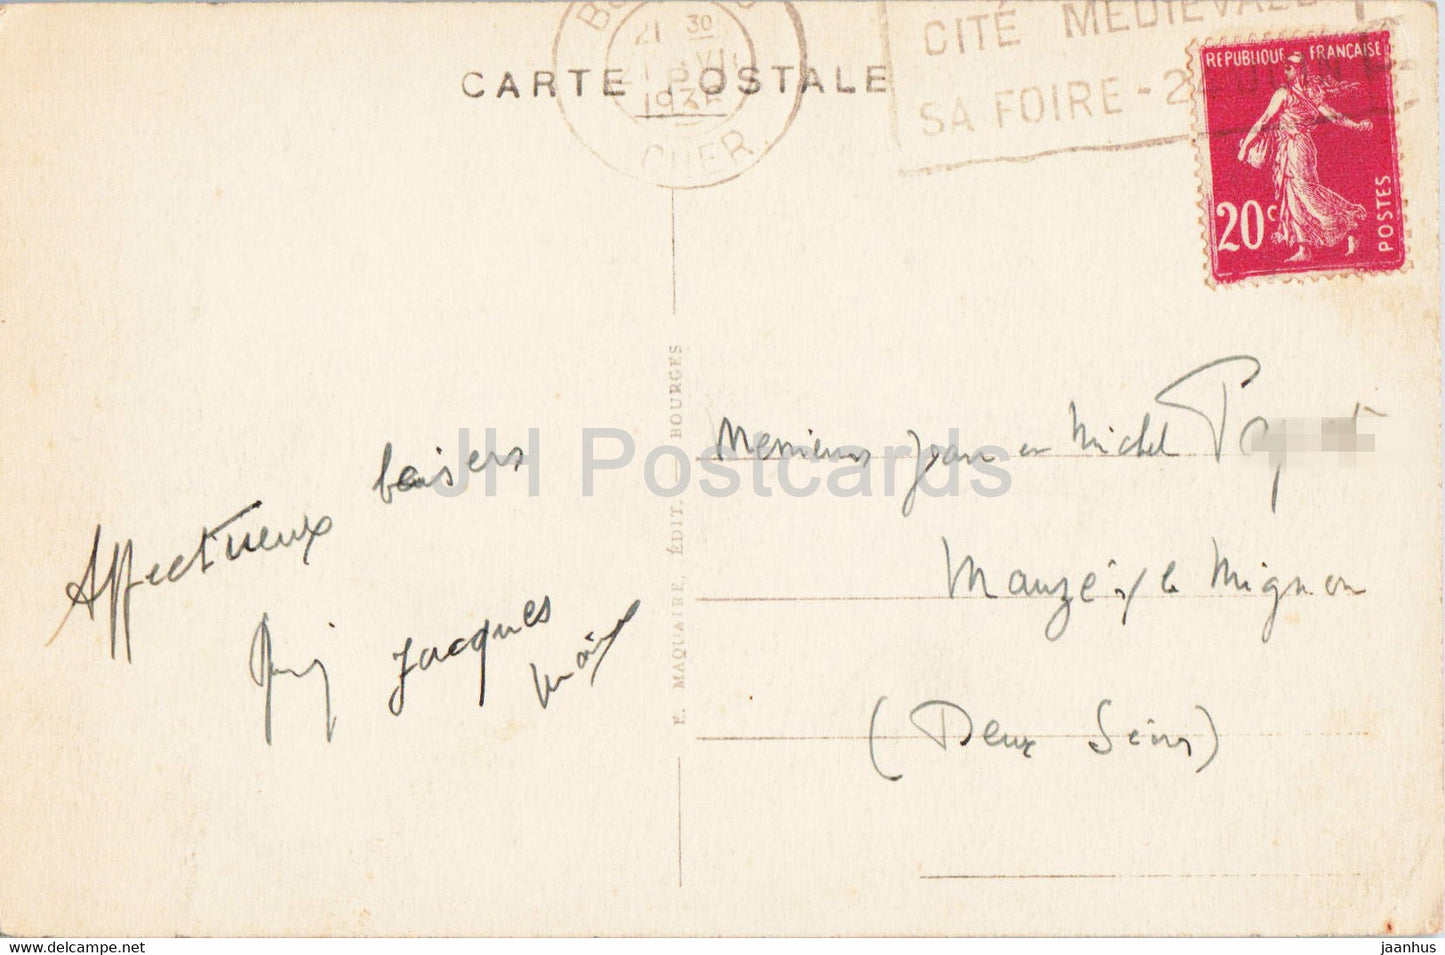 Bourges - Palais Jacques Coeur - La Facade - 301 - alte Postkarte - 1936 - Frankreich - gebraucht